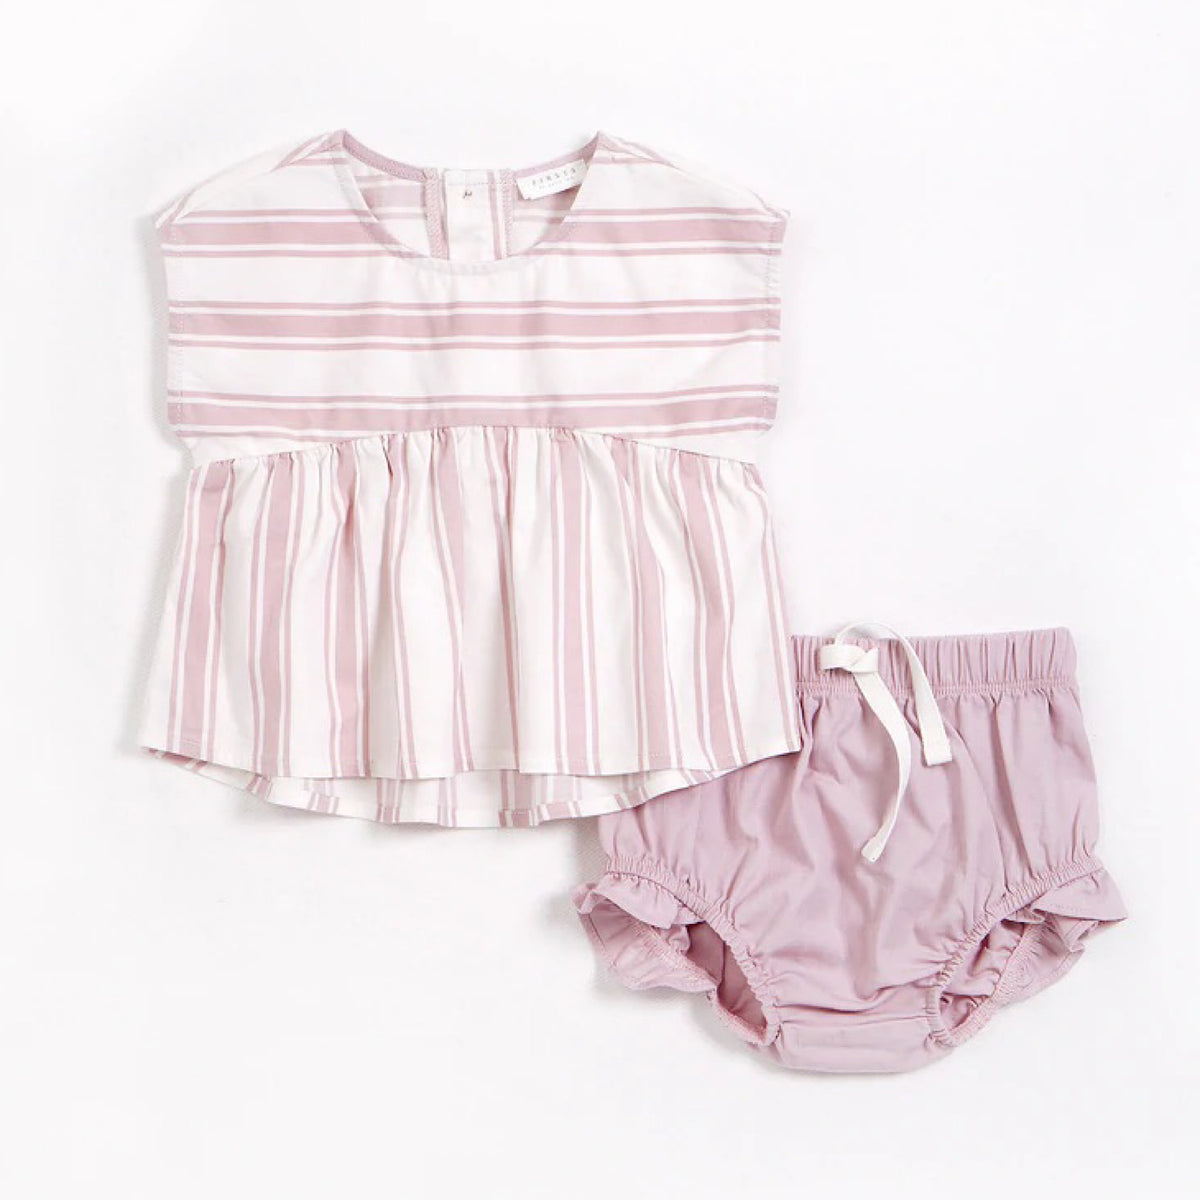 Lavender Stripes 2 Piece Outfit Set